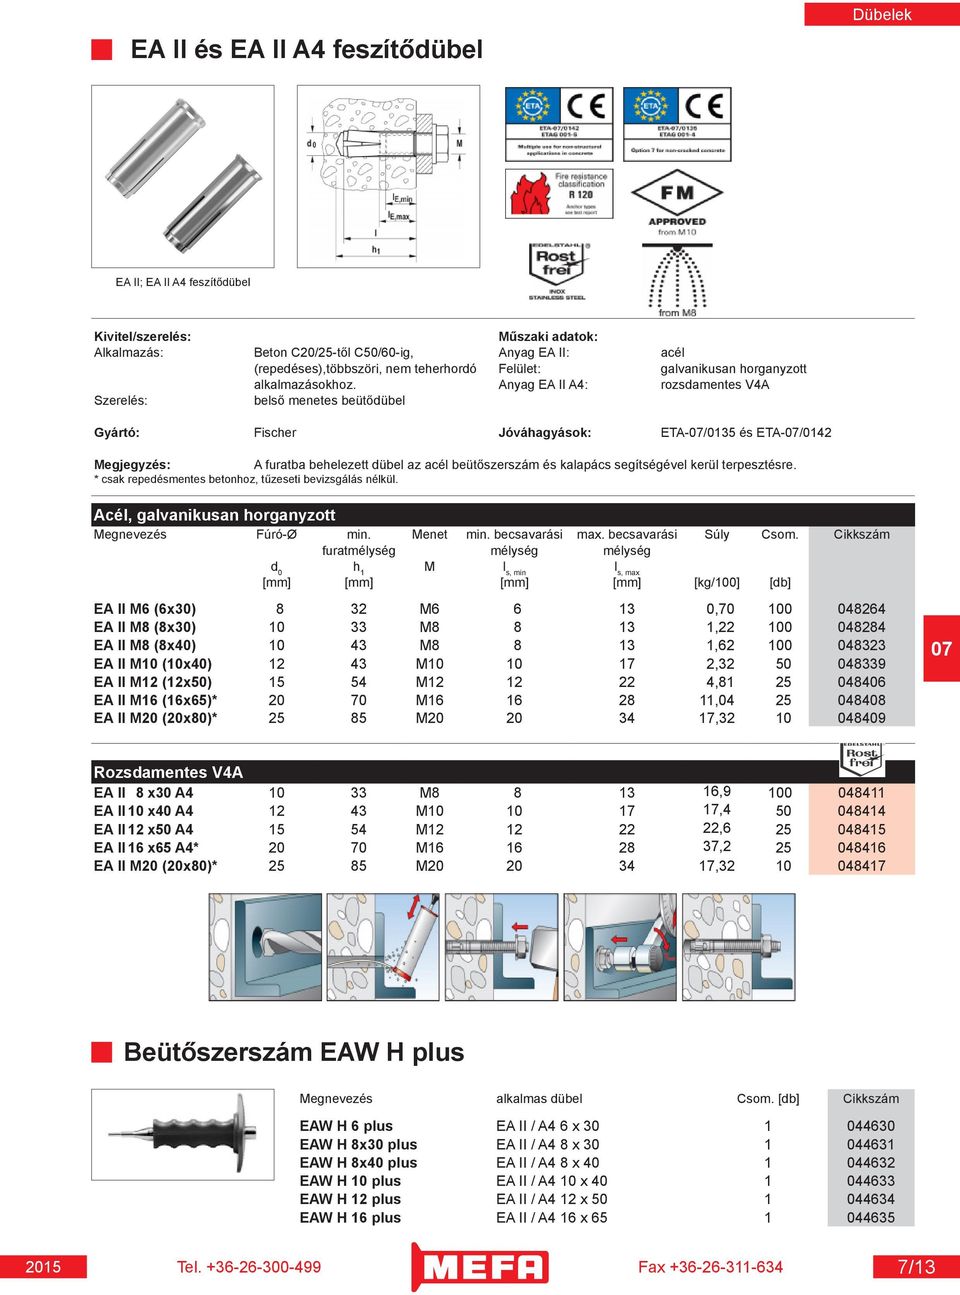 Anyag EA II A4: rozsdamentes V4A Szerelés: belső menetes beütődübel Fischer Jóváhagyások: ETA-/0135 és ETA-/0142 A furatba behelezett dübel az acél beütőszerszám és kalapács segítségével kerül